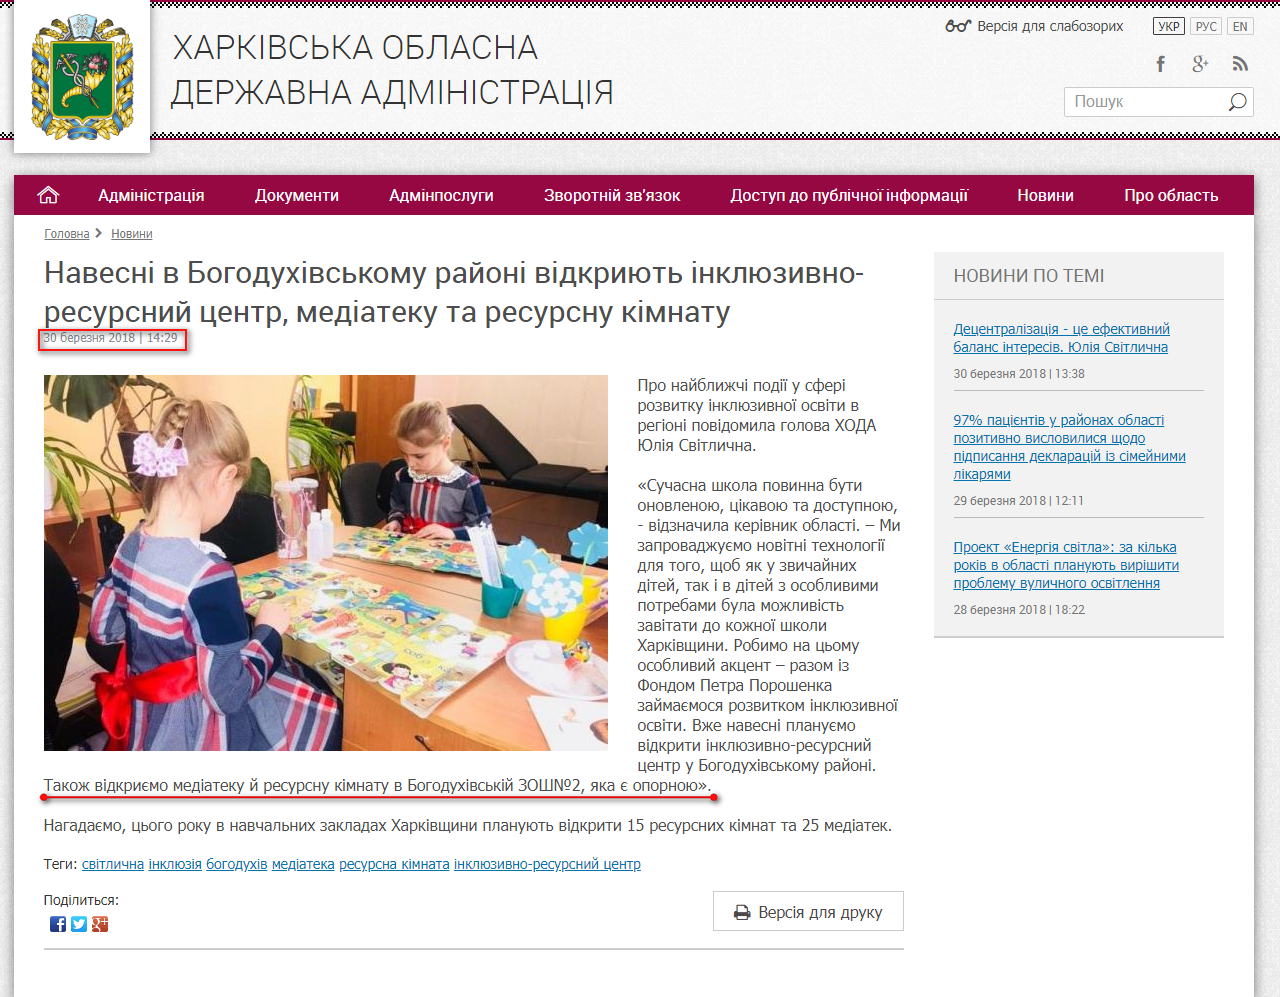 http://kharkivoda.gov.ua/news/92052